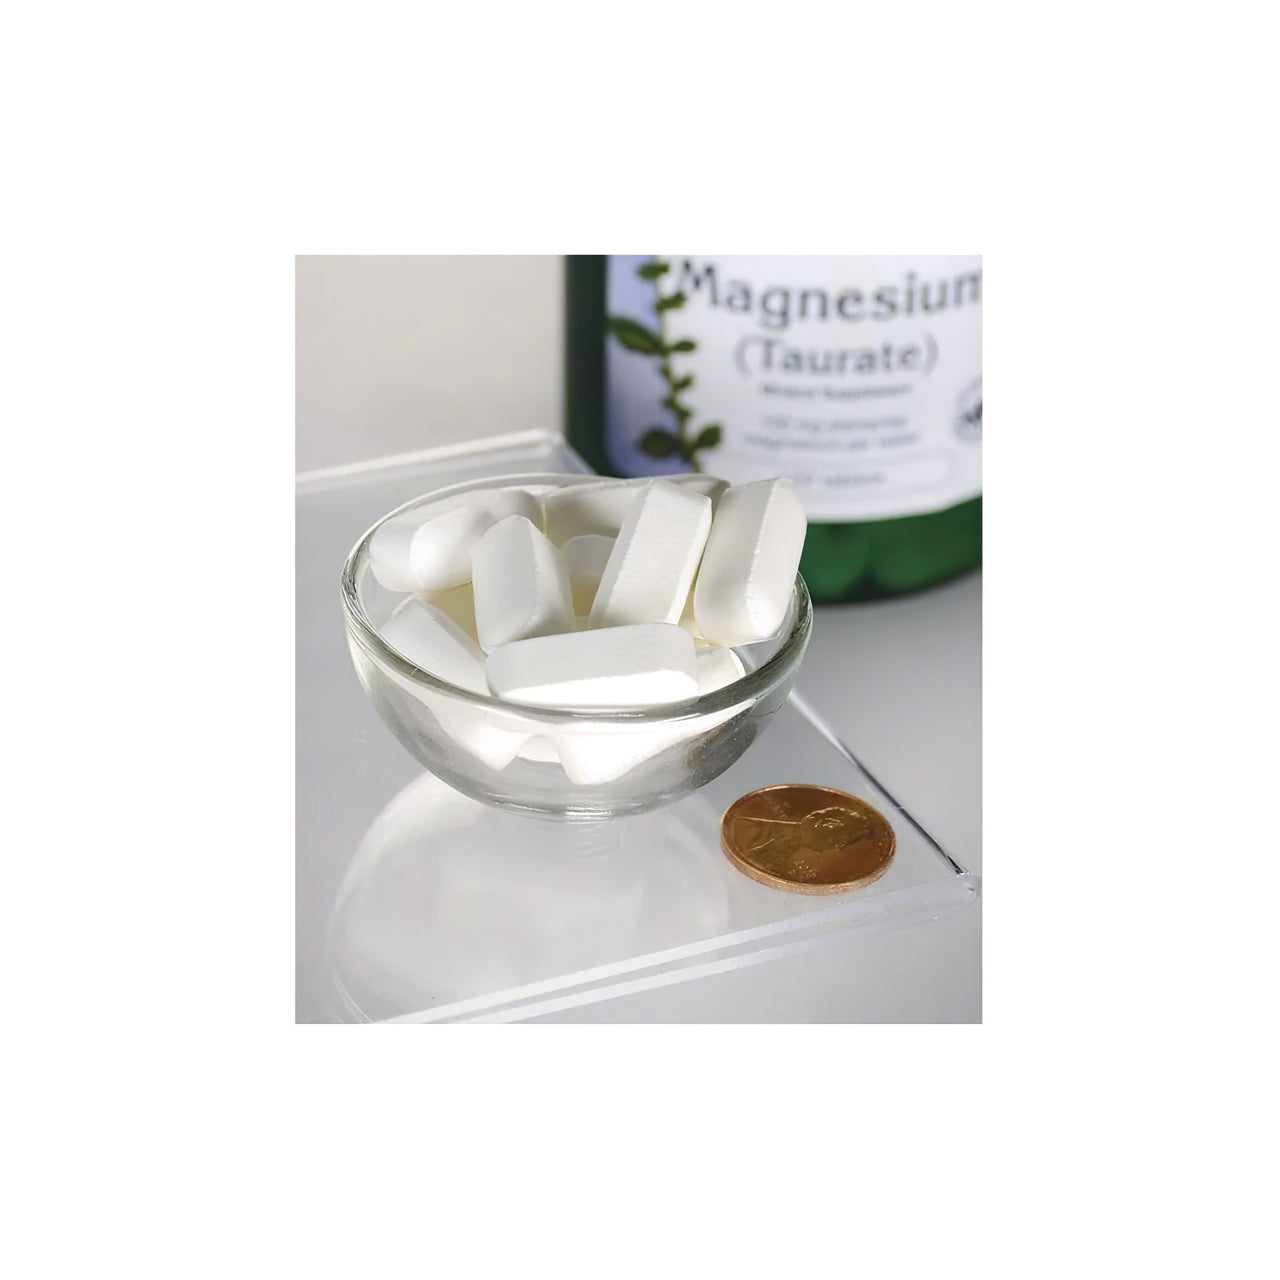 Un frasco de Swanson Taurato de Magnesio 100 mg 120 tab sentado junto a un cuenco de pastillas blancas.